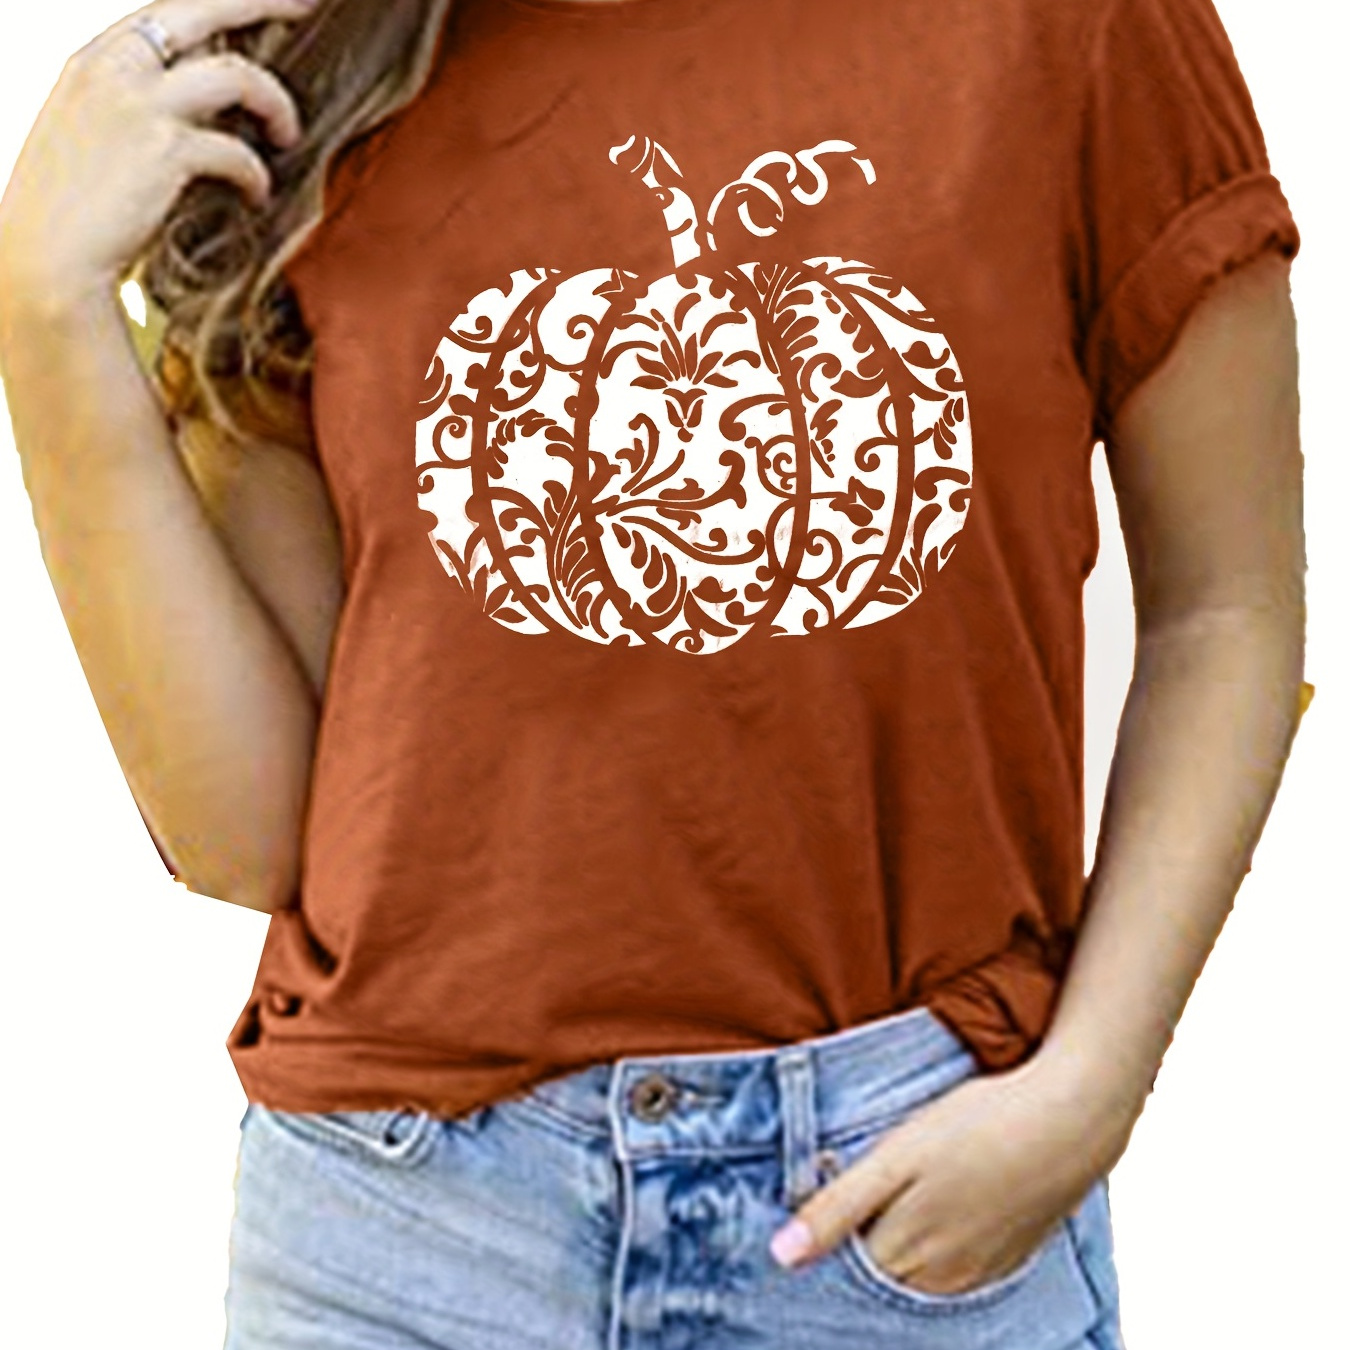 

Pumpkin Print T-shirt, Casual Crew Neck Short Sleeve Summer T-shirt, Women's Clothing